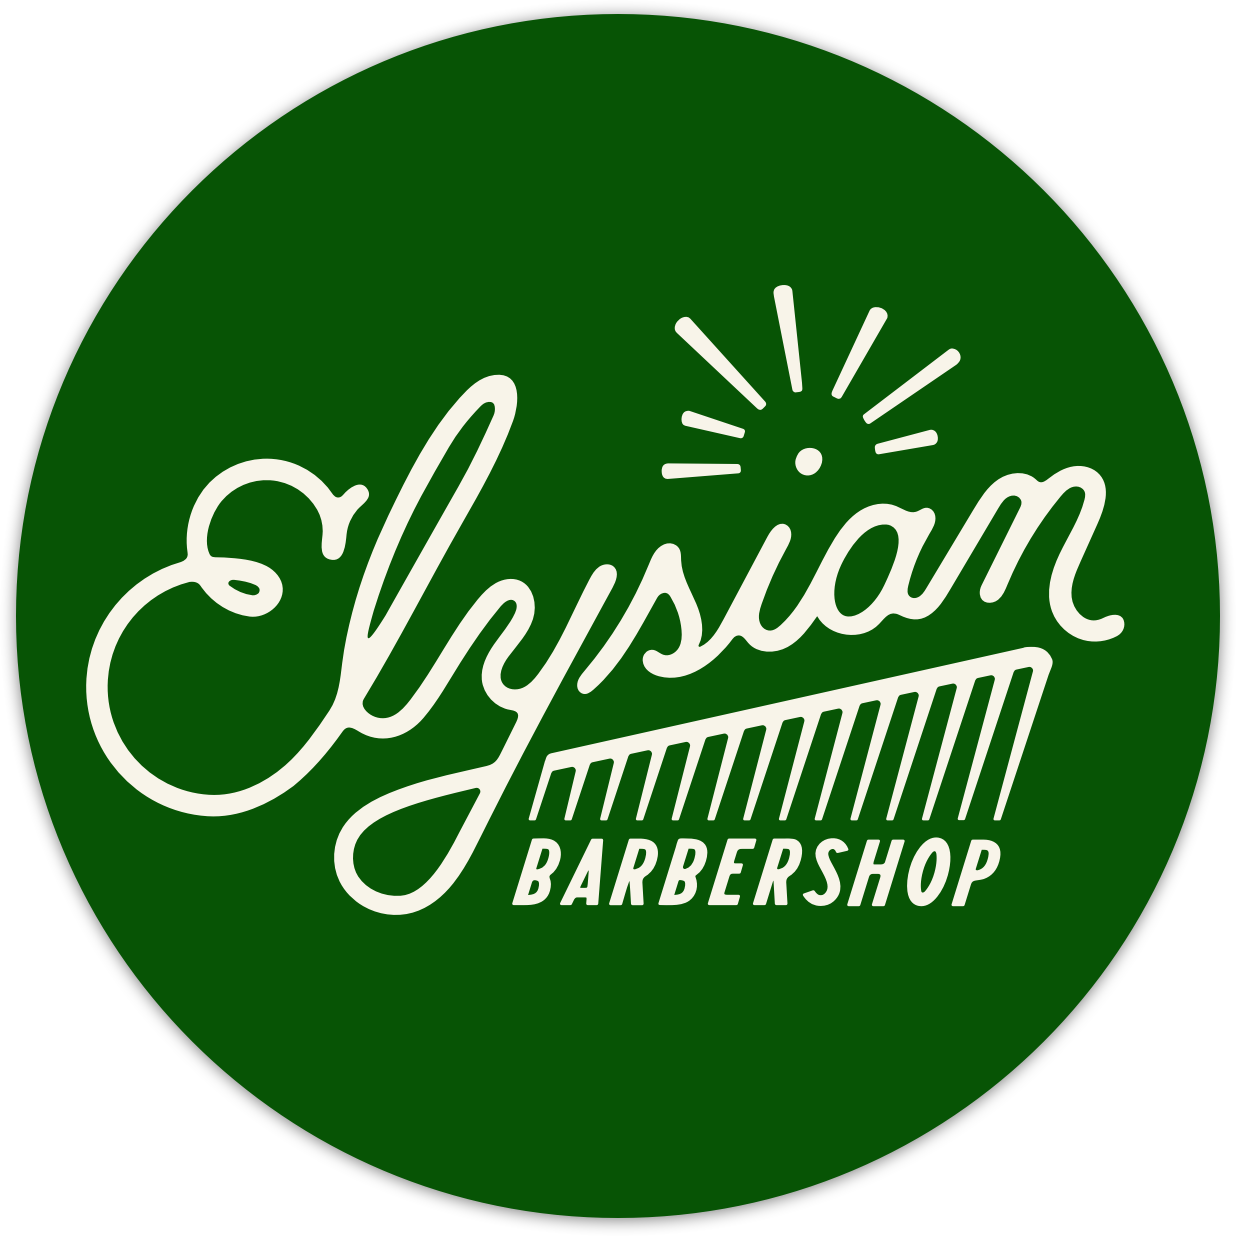 Elysian Barbershop